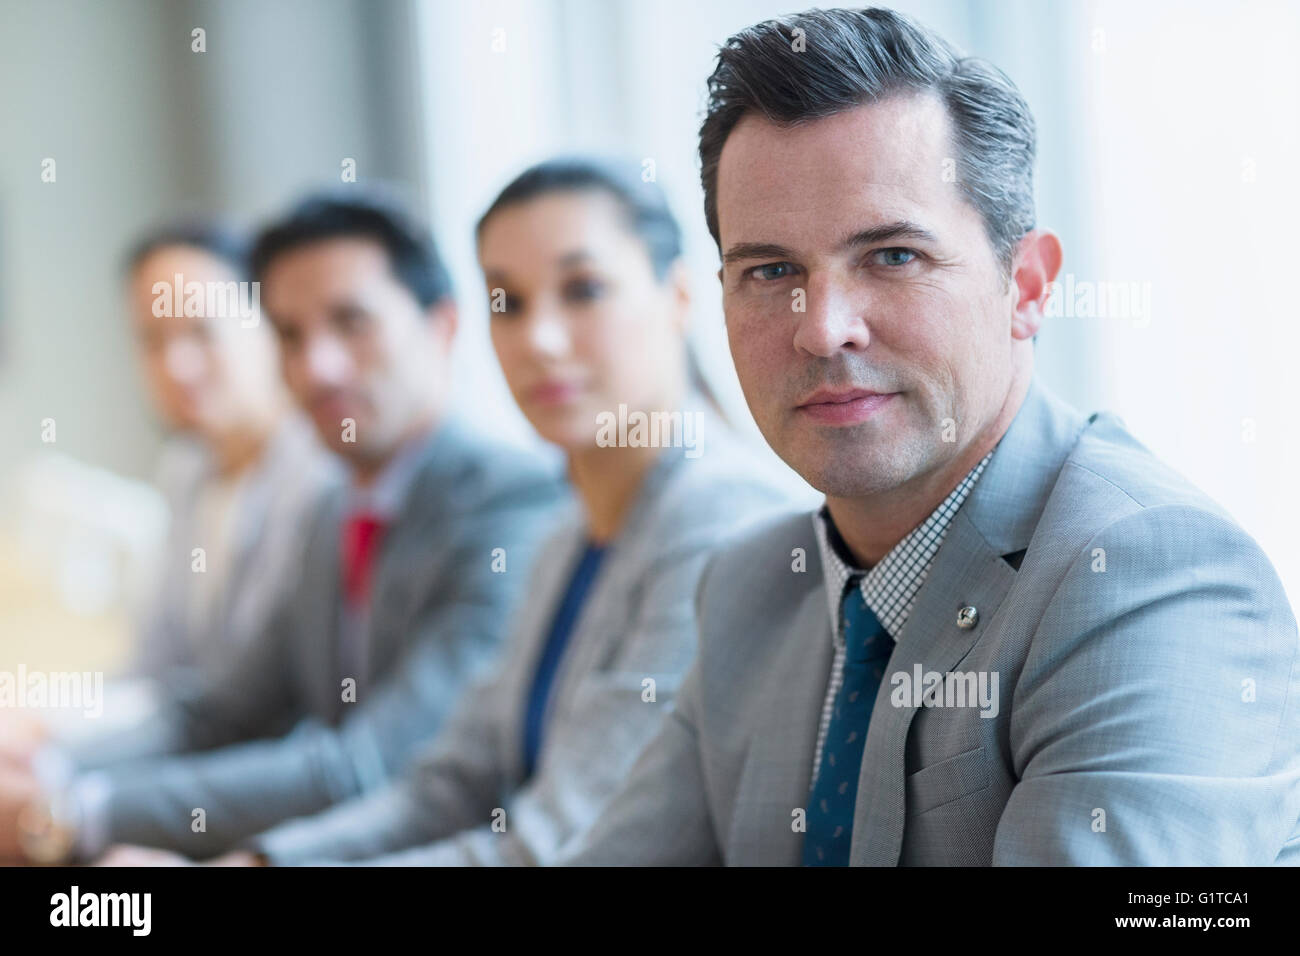 Retrato de confianza del empresario y sus colegas en una fila Foto de stock